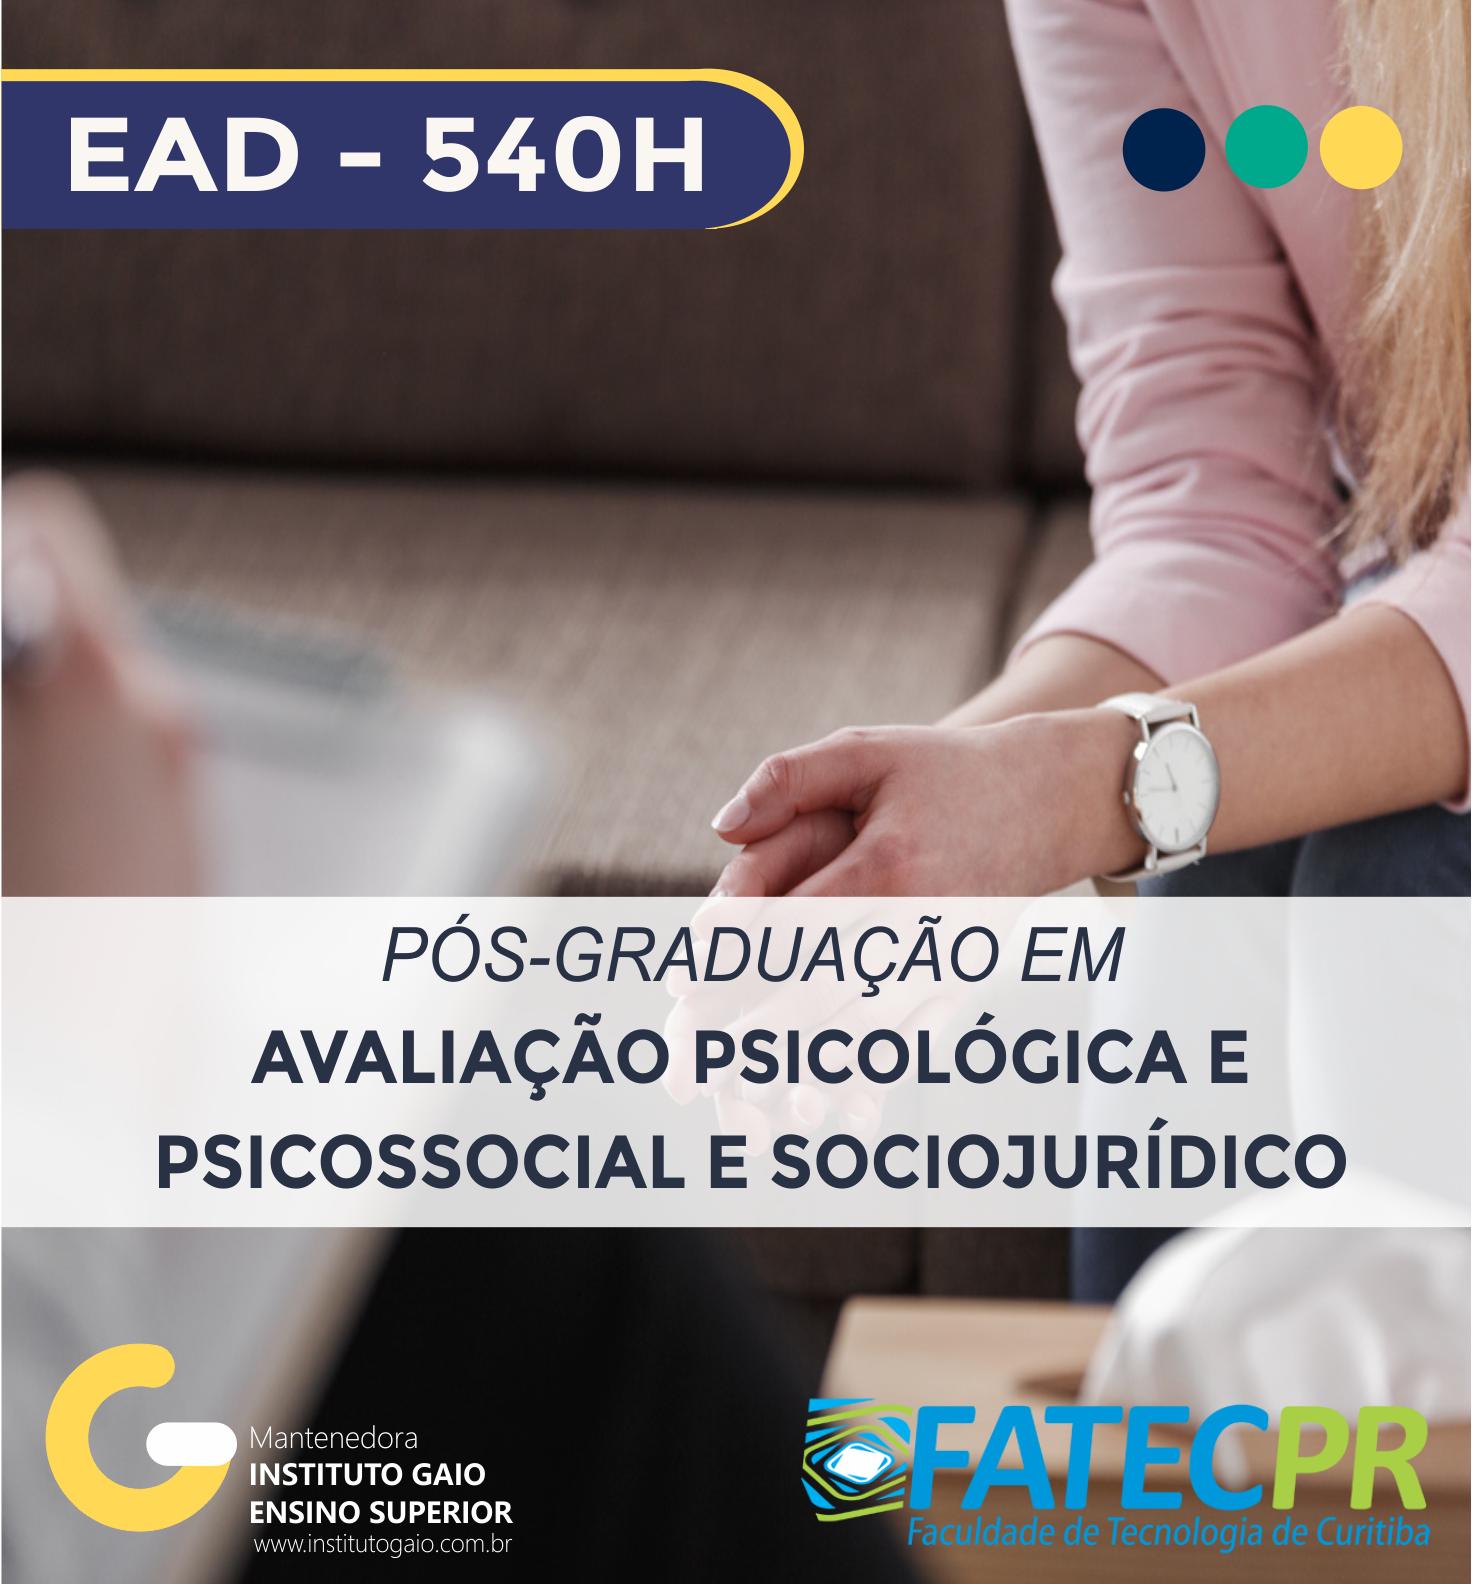 Pós-graduação em Avaliação Psicológica e Psicossocial e Sociojurídico – 540h – AVA1